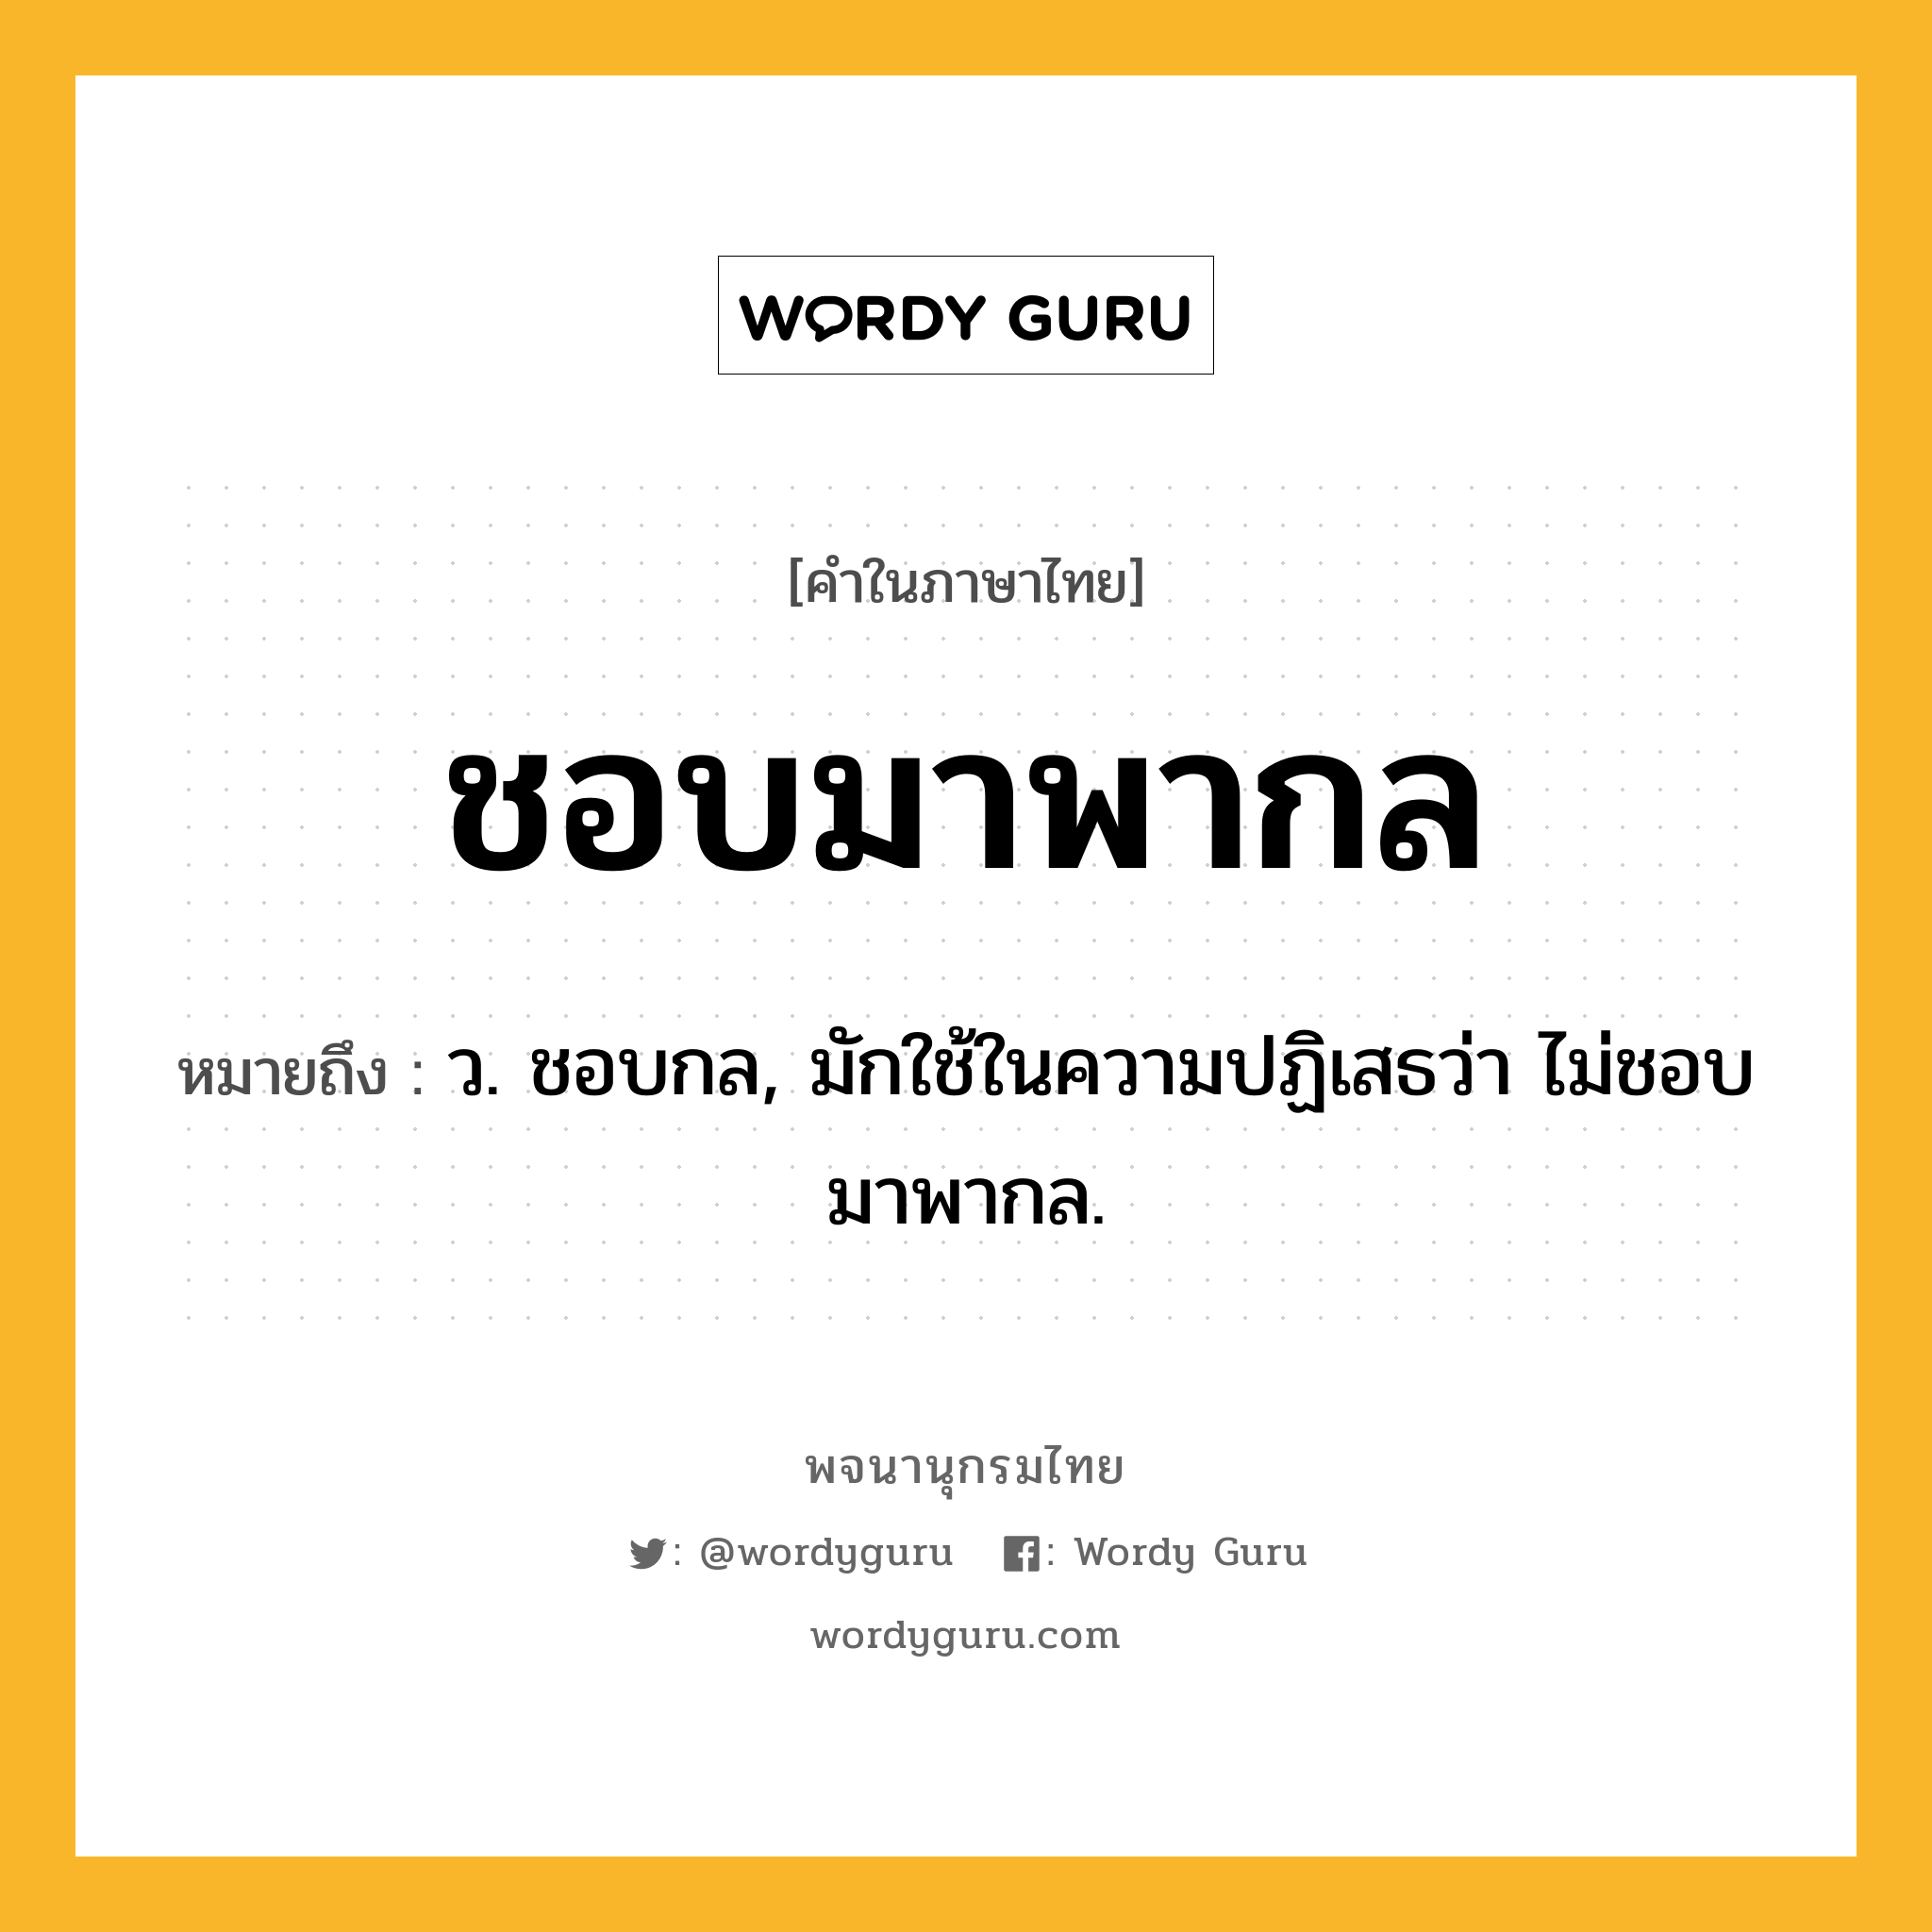 ชอบมาพากล หมายถึงอะไร?, คำในภาษาไทย ชอบมาพากล หมายถึง ว. ชอบกล, มักใช้ในความปฏิเสธว่า ไม่ชอบมาพากล.